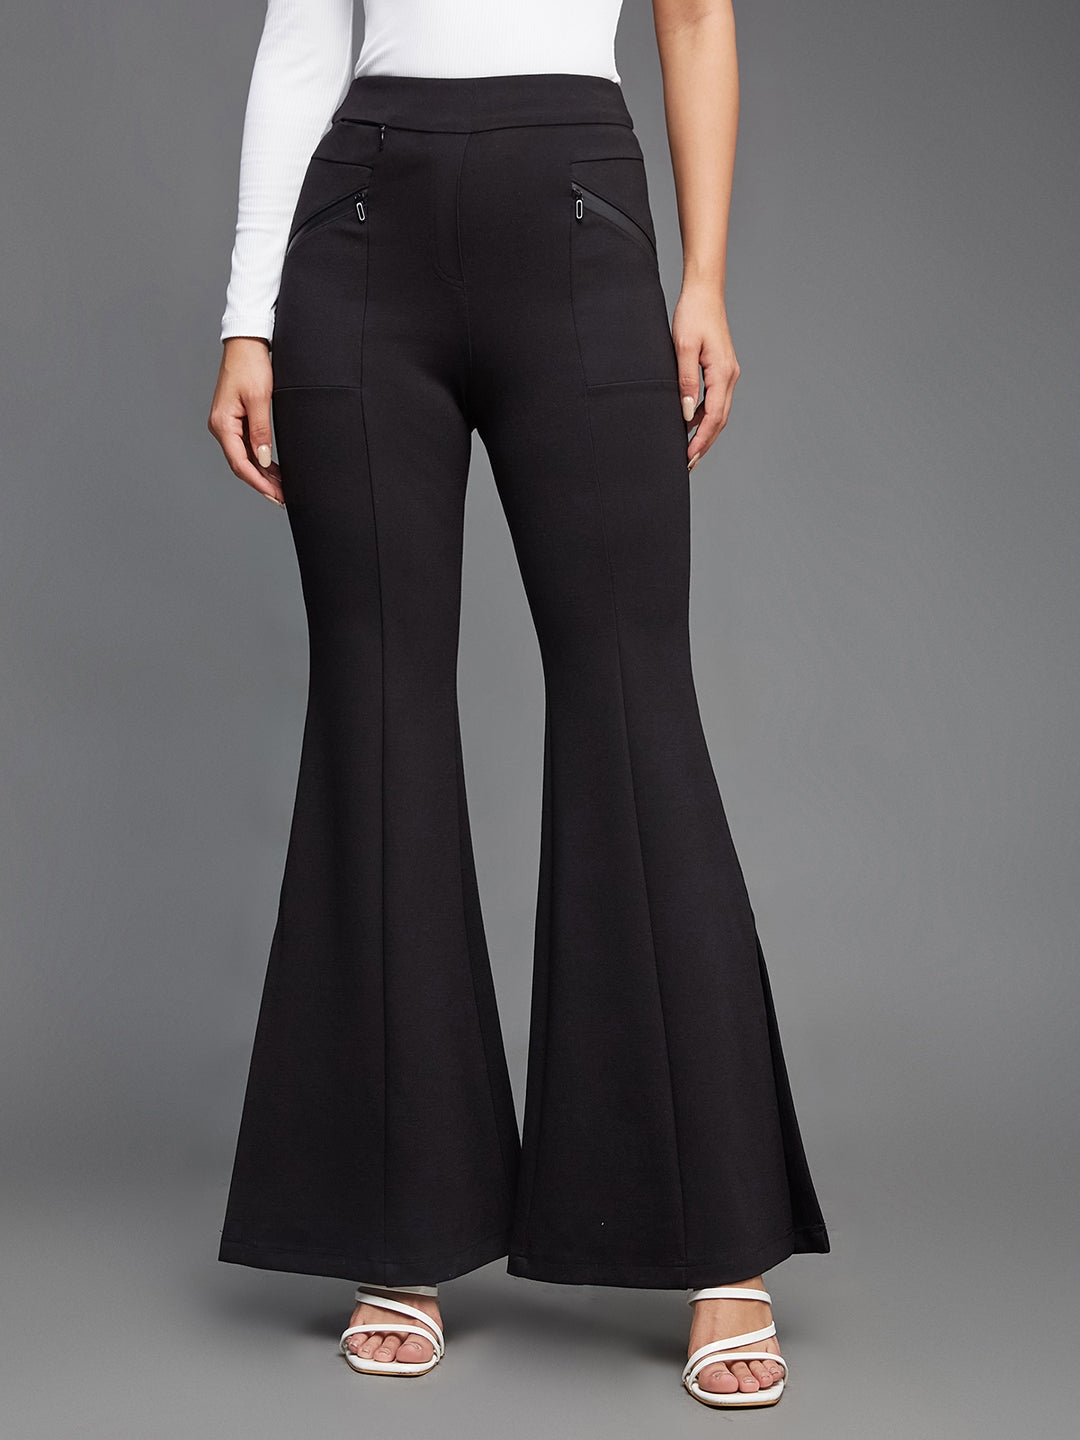 MISS CHASE | Black Viscose Solid Side Slit Bootcut Regular  Trouser